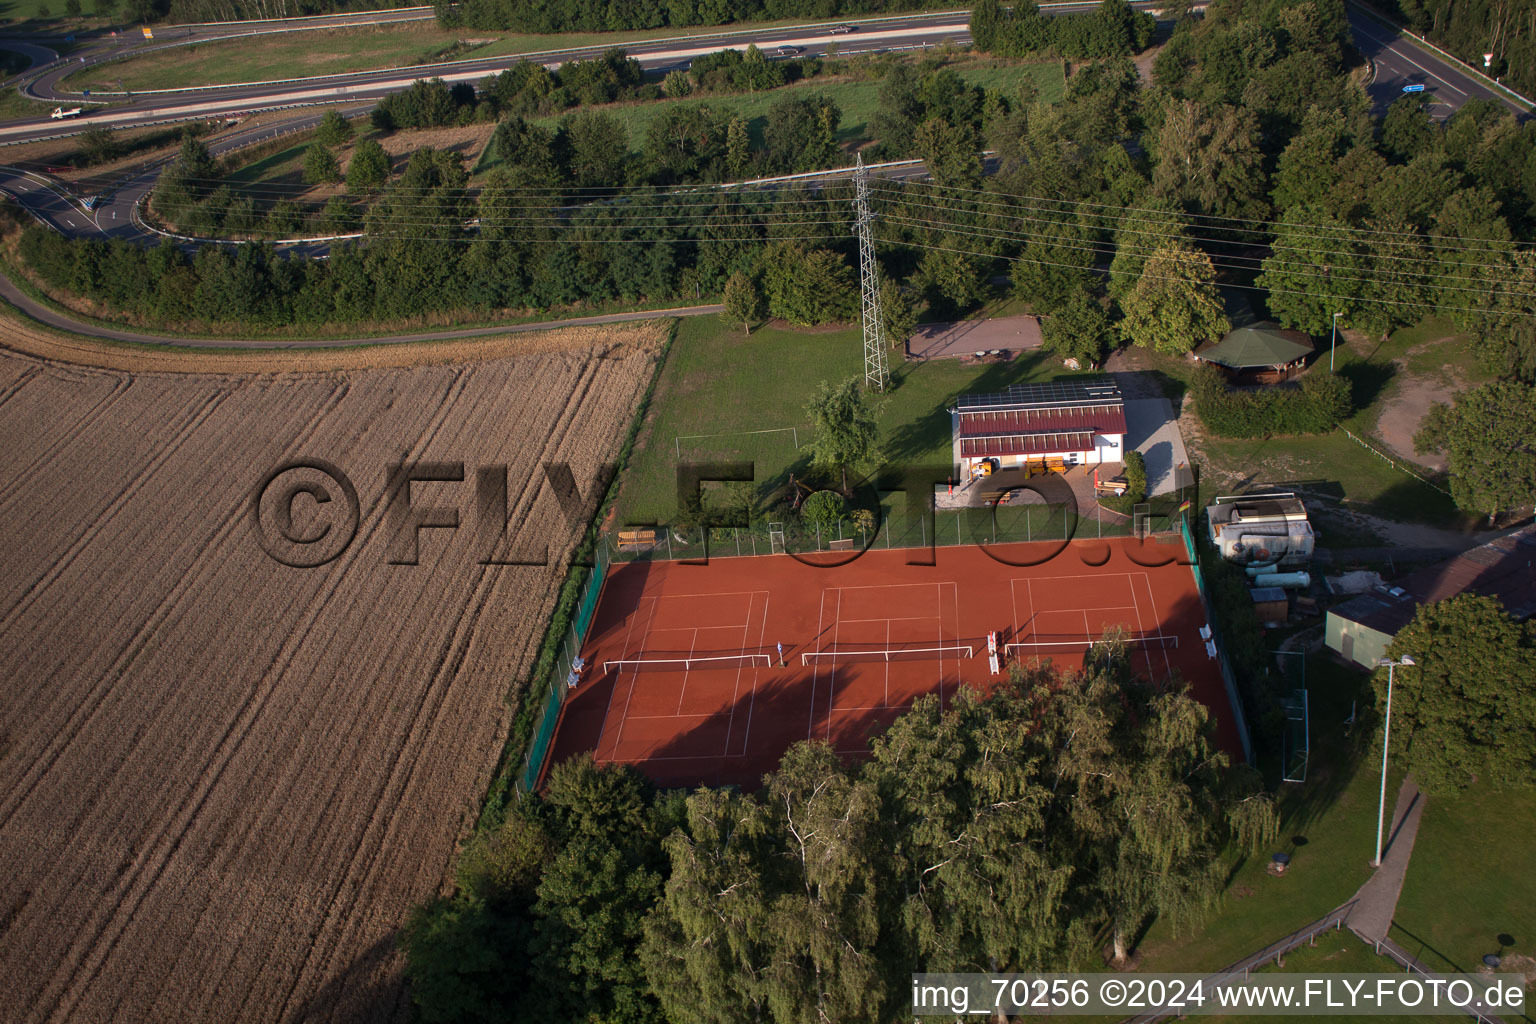 Vue aérienne de Club de tennis à Erlenbach bei Kandel dans le département Rhénanie-Palatinat, Allemagne